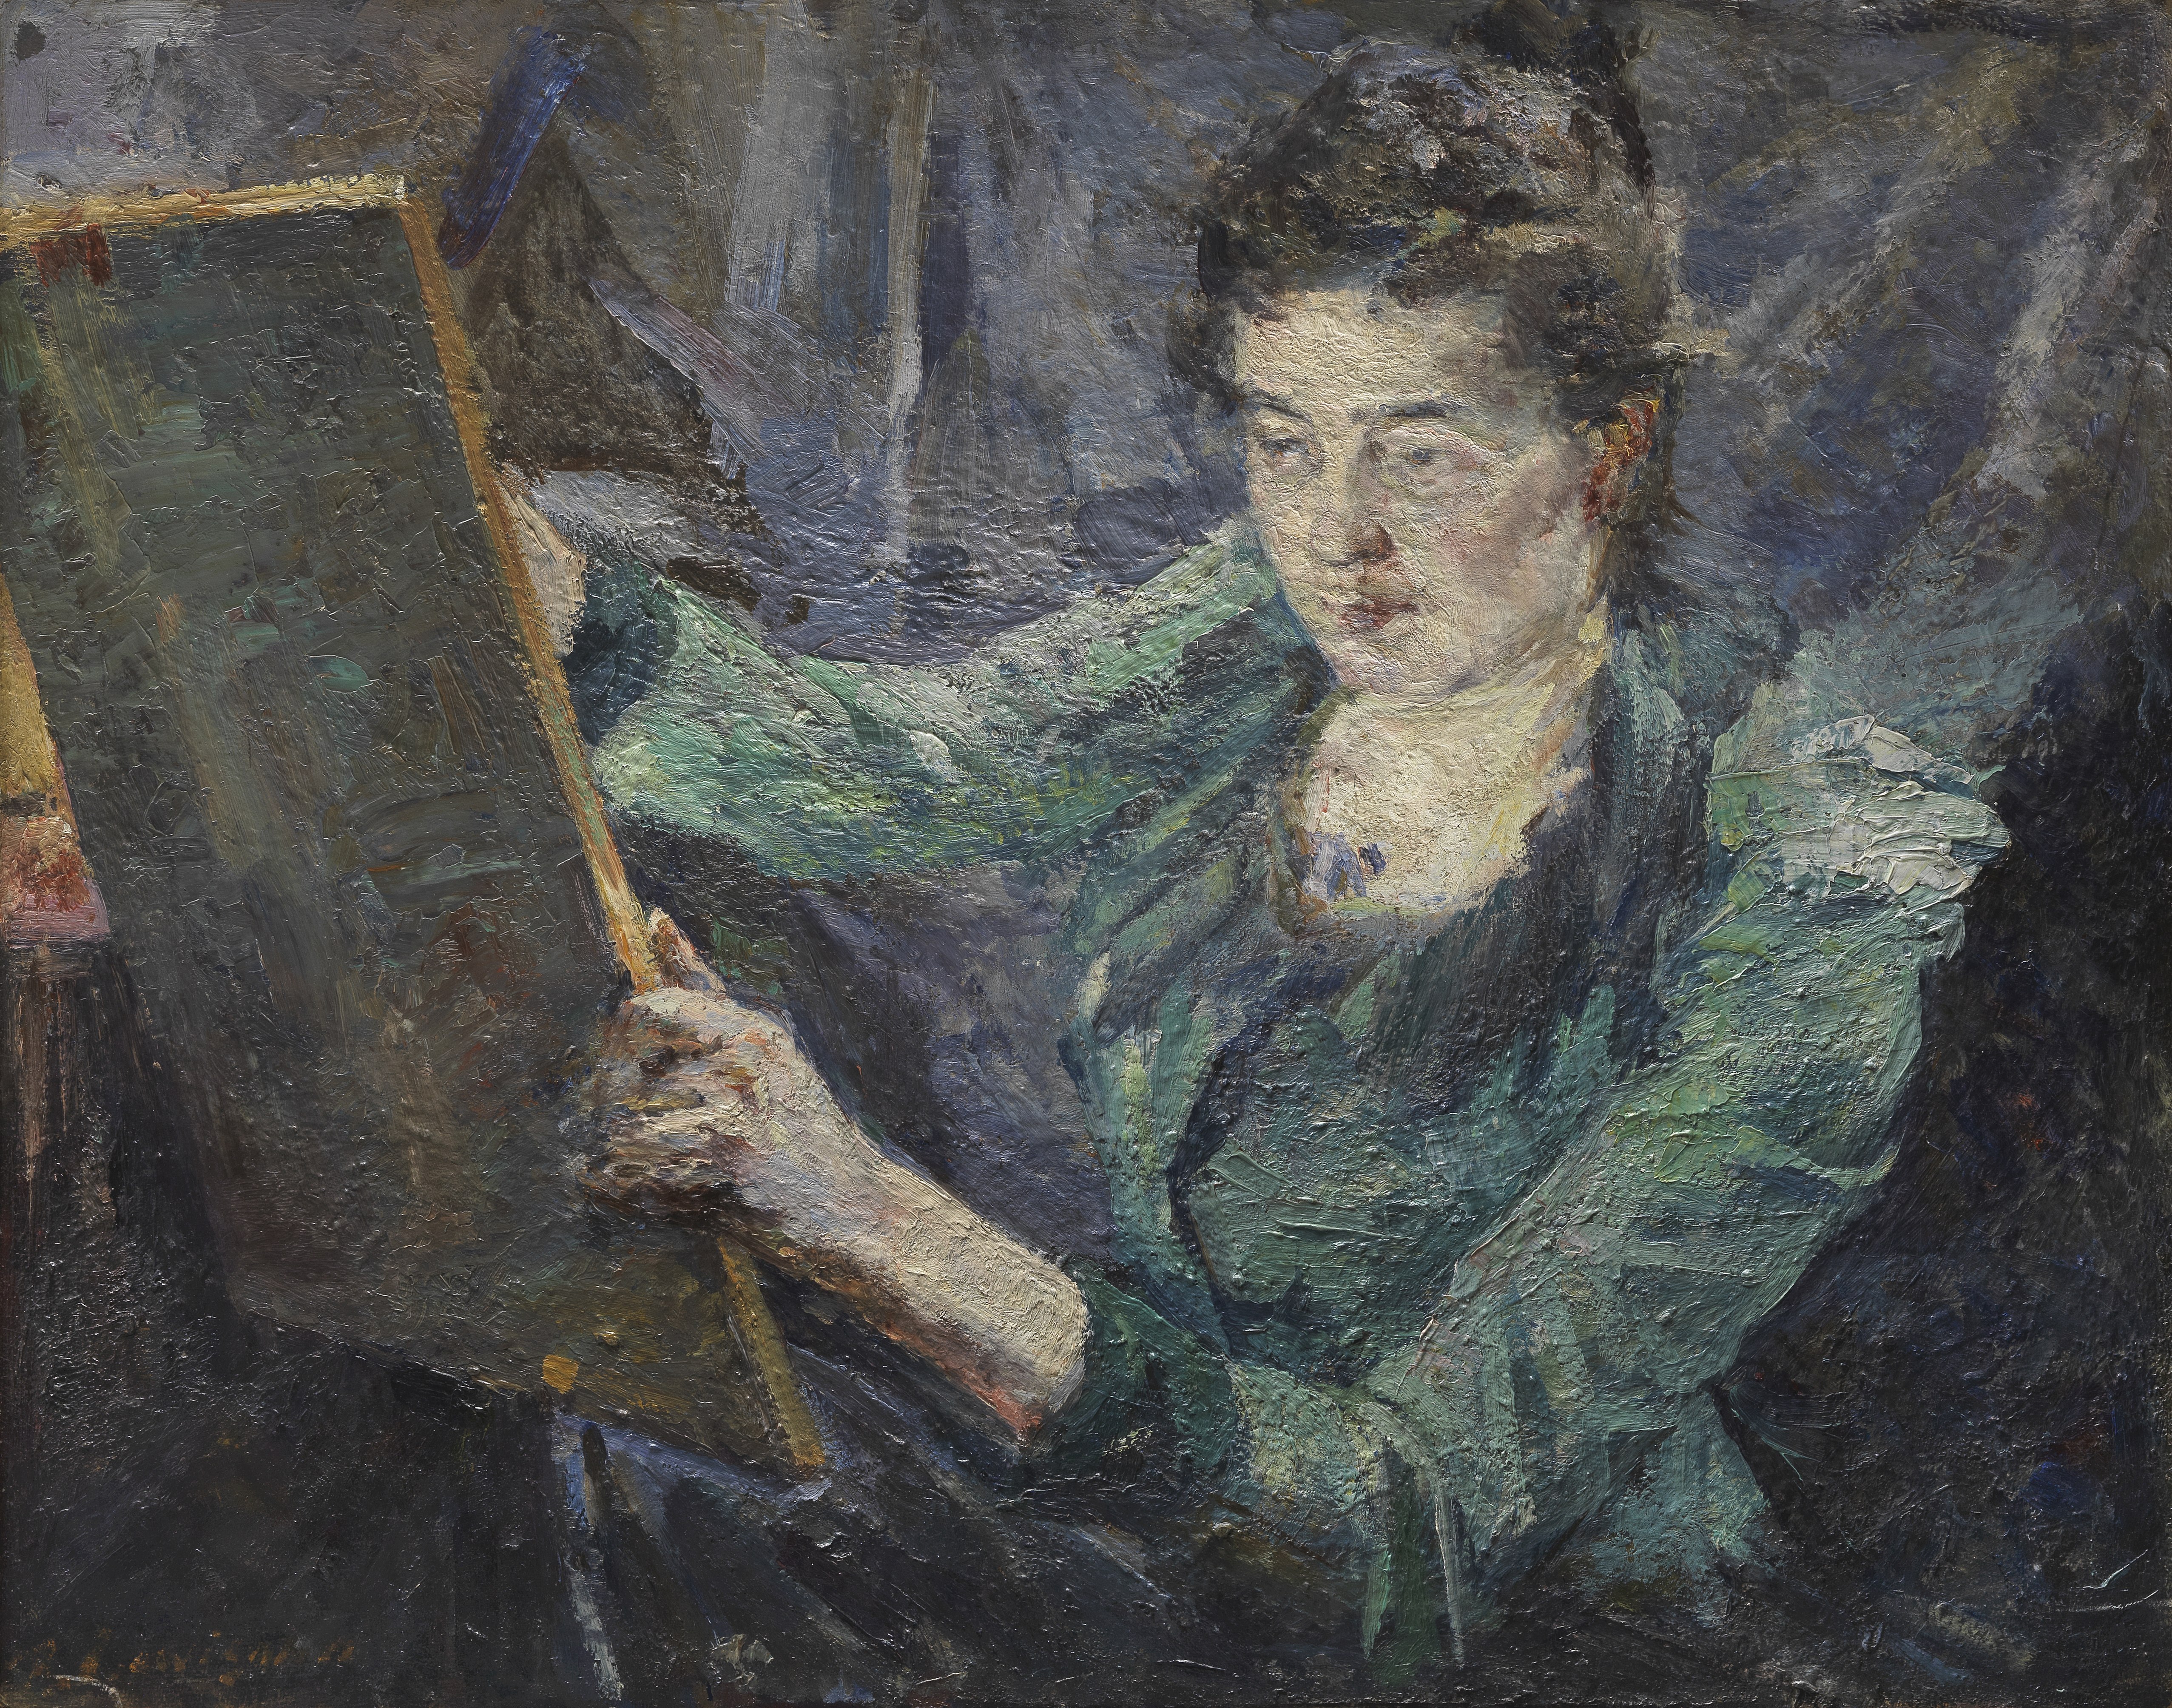 Raphael Lewisohn (German, 1863-1923) Mary Cassatt in her studio